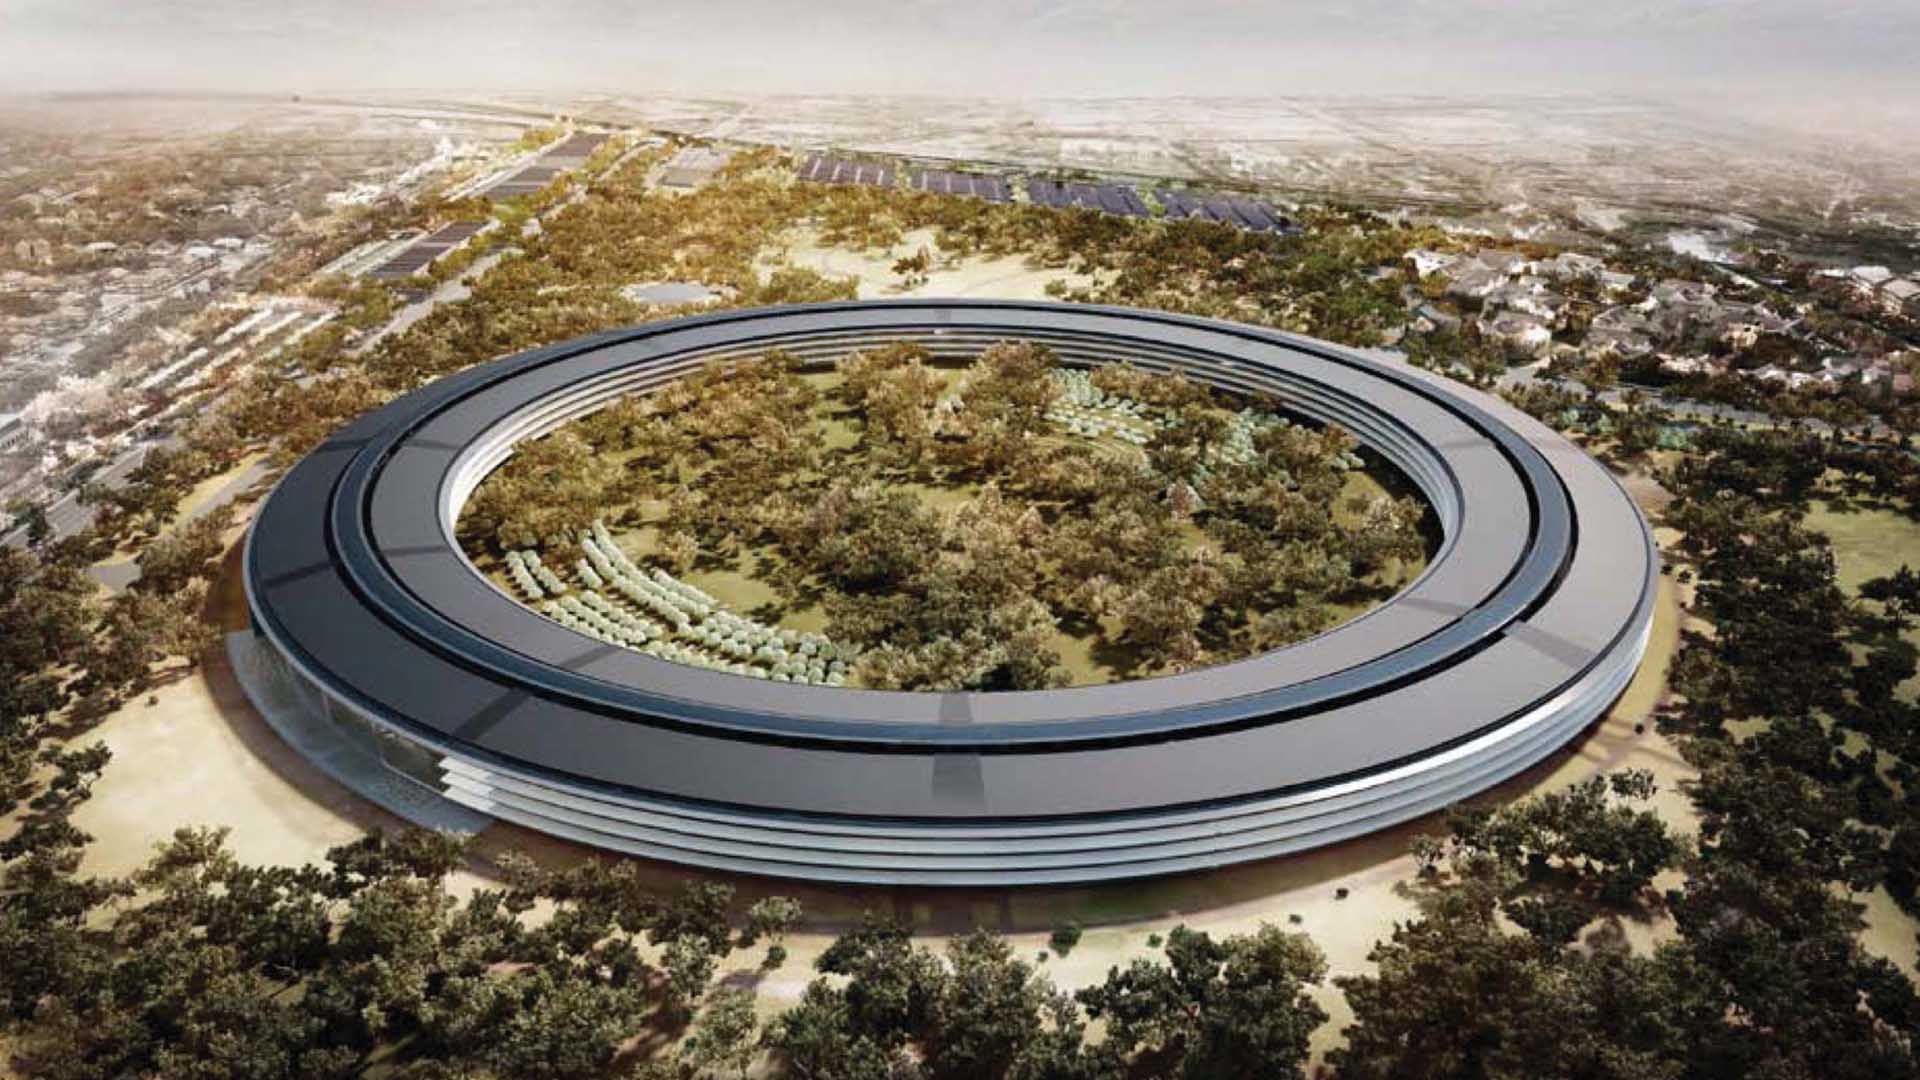 La edificación que parece una nave espacial, estará ubicada en California y dará techo a más de 10 mil empleados